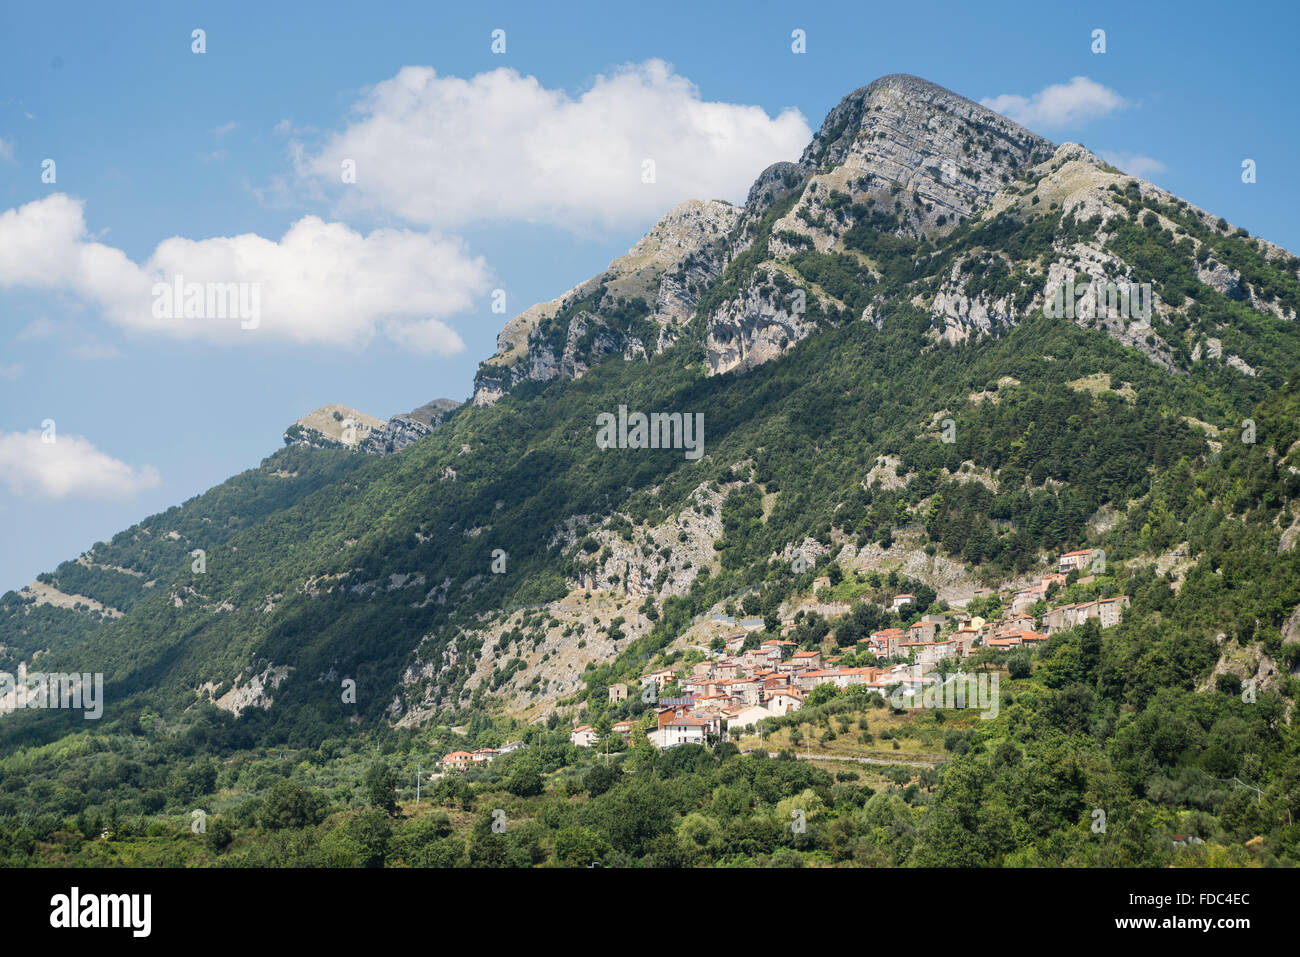 Das Dorf Magliano Vetere am Hang einer felsigen Bergkette im Hinterland des Cilento, Kampanien, Italien Stockfoto